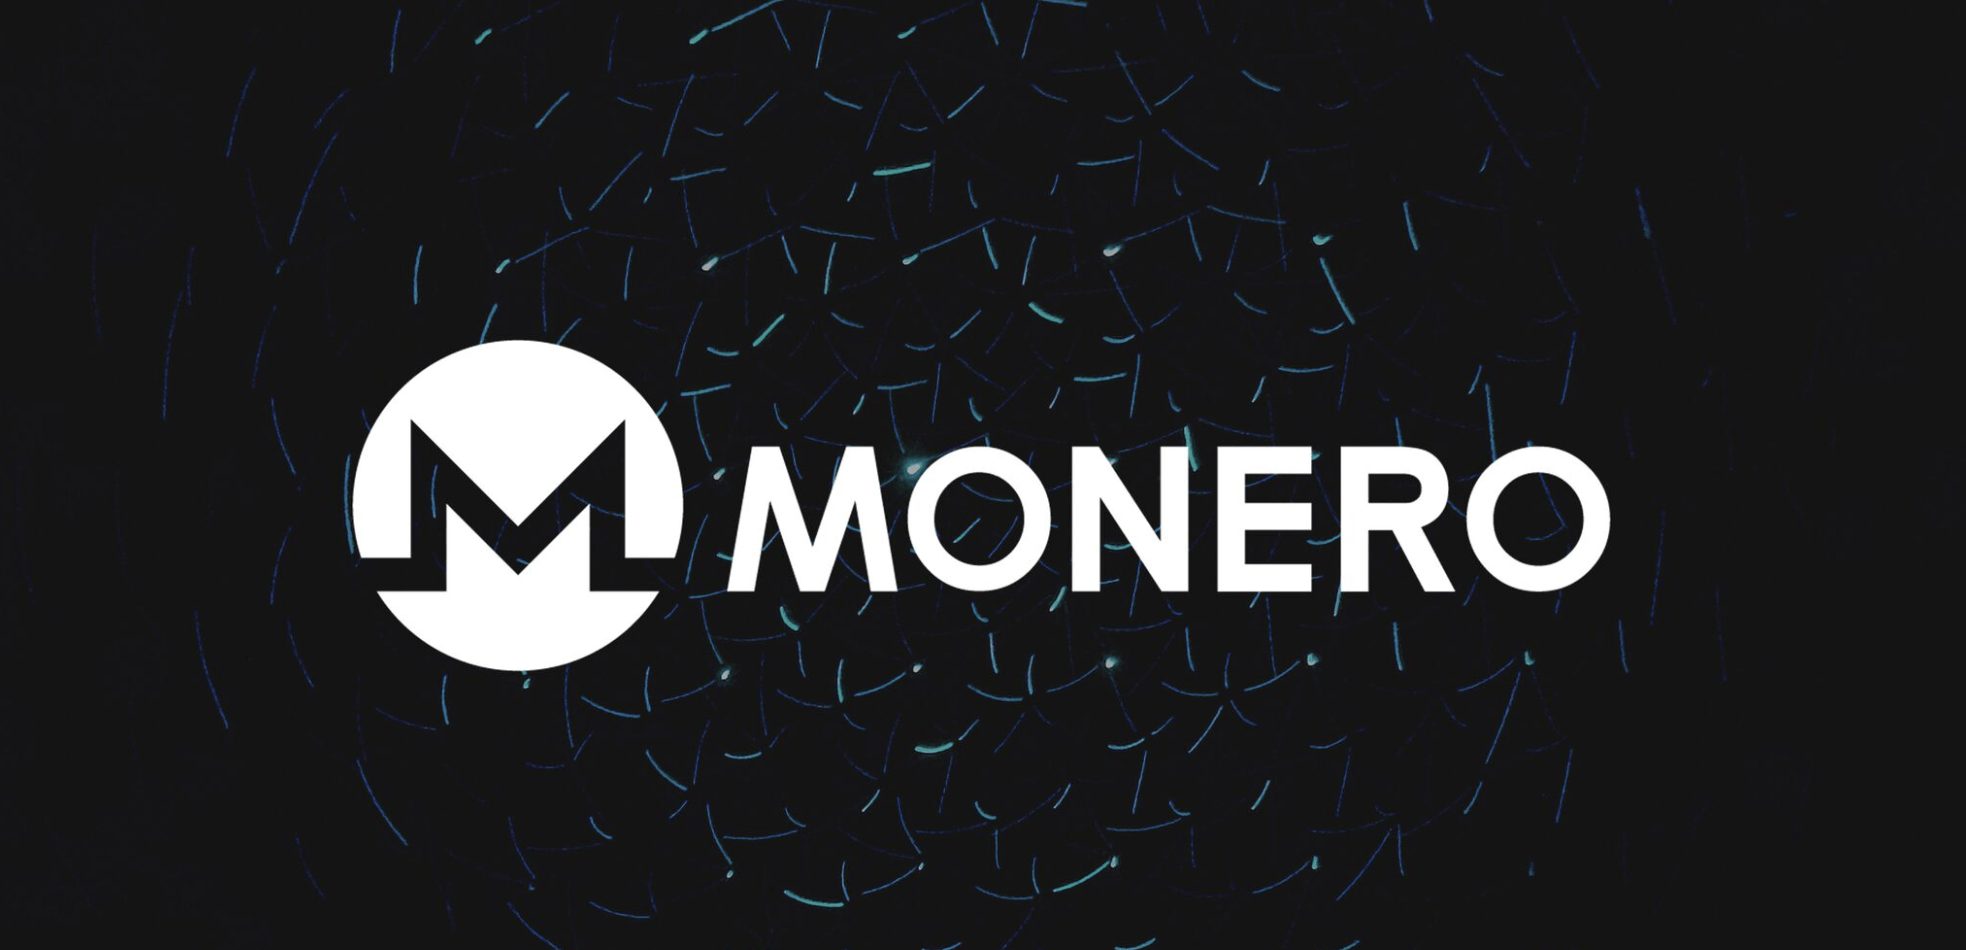 Monero darknet markets